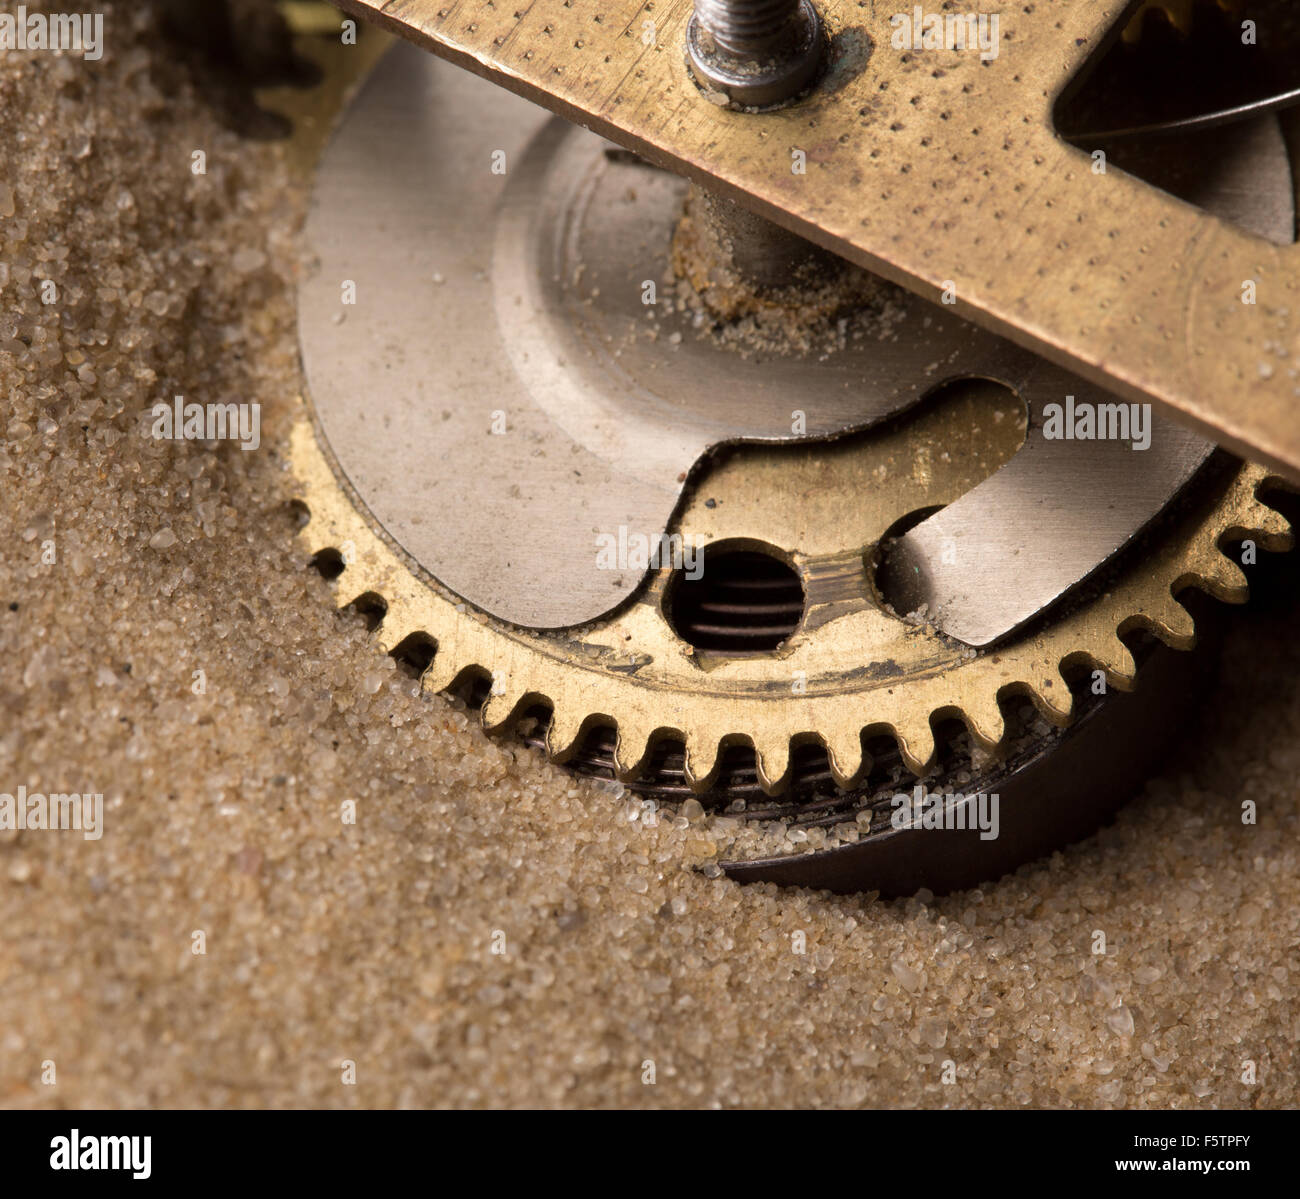 Endurance mécanique - réveil engrenages dans le sable Photo Stock - Alamy